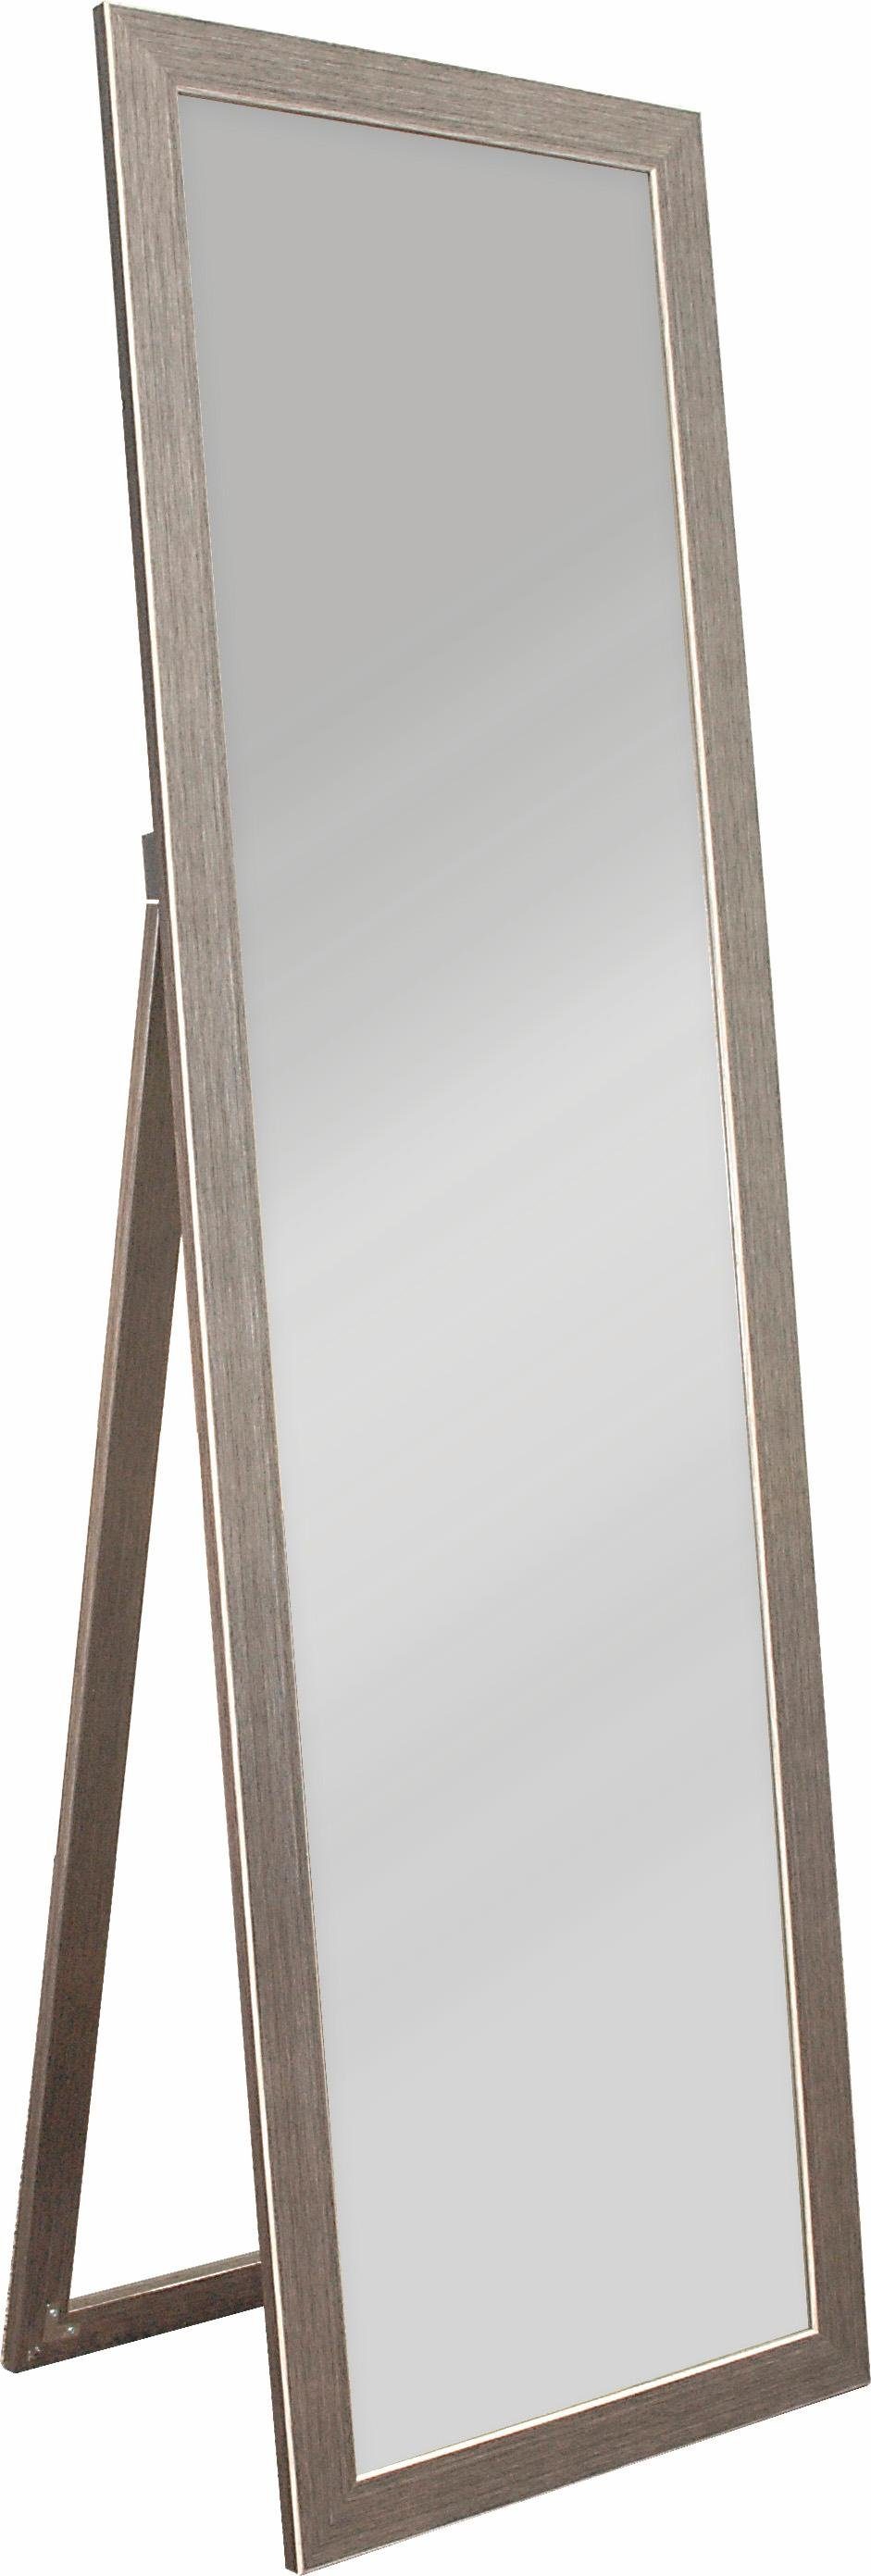 Enzovoorts Berri vacuüm Home affaire Sierspiegel Mirror Raahe Verticale spiegel (1 stuk) makkelijk  gevonden | OTTO